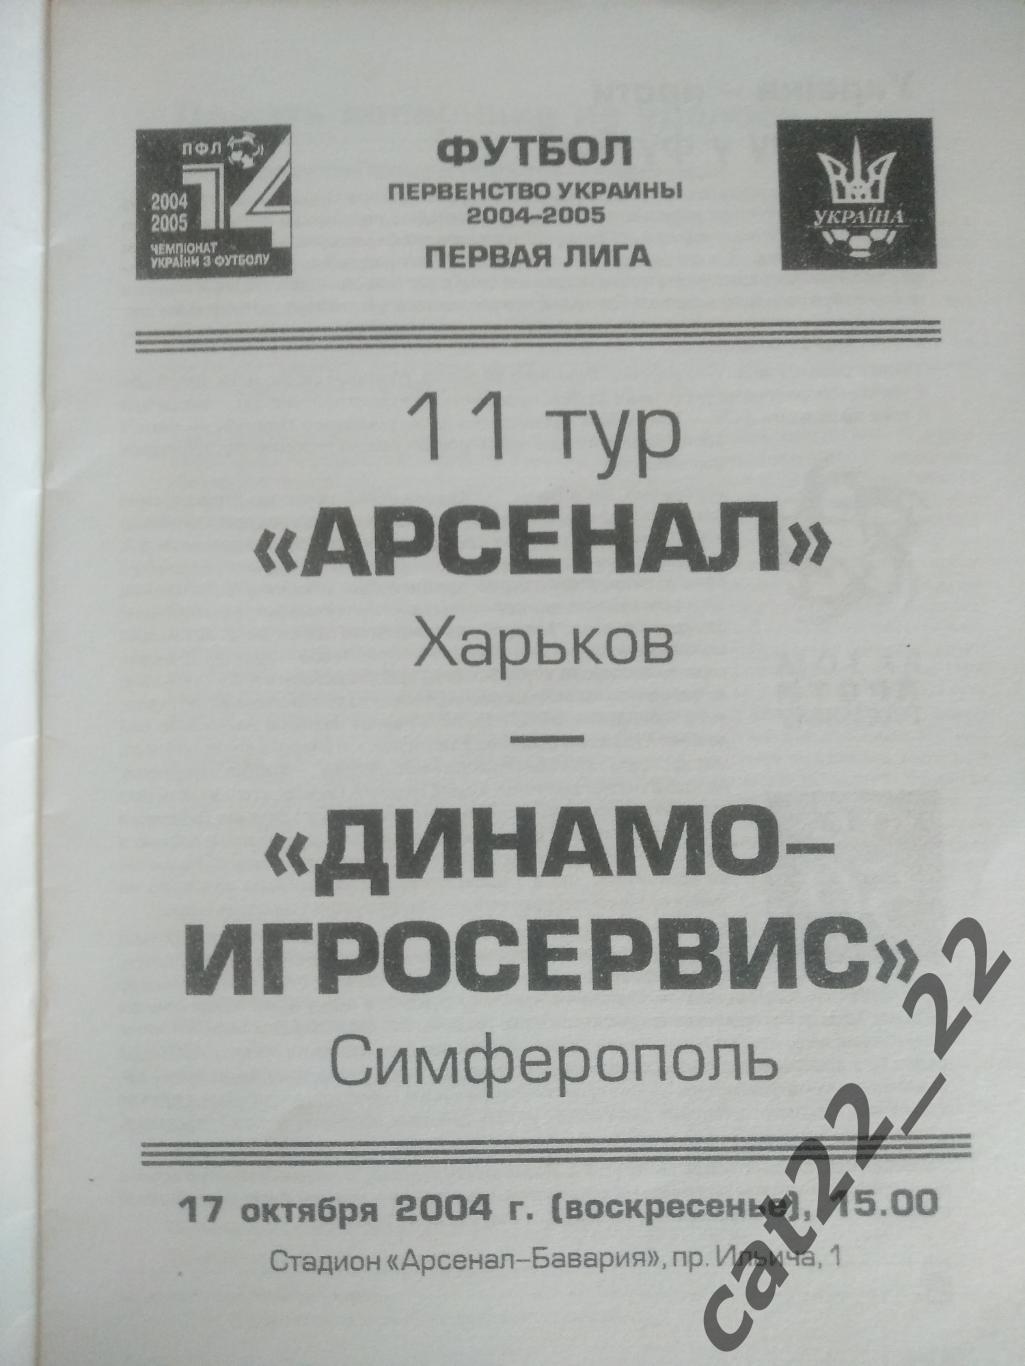 Арсенал Харьков - Динамо - Игросервис Симферополь 2004/2005 1